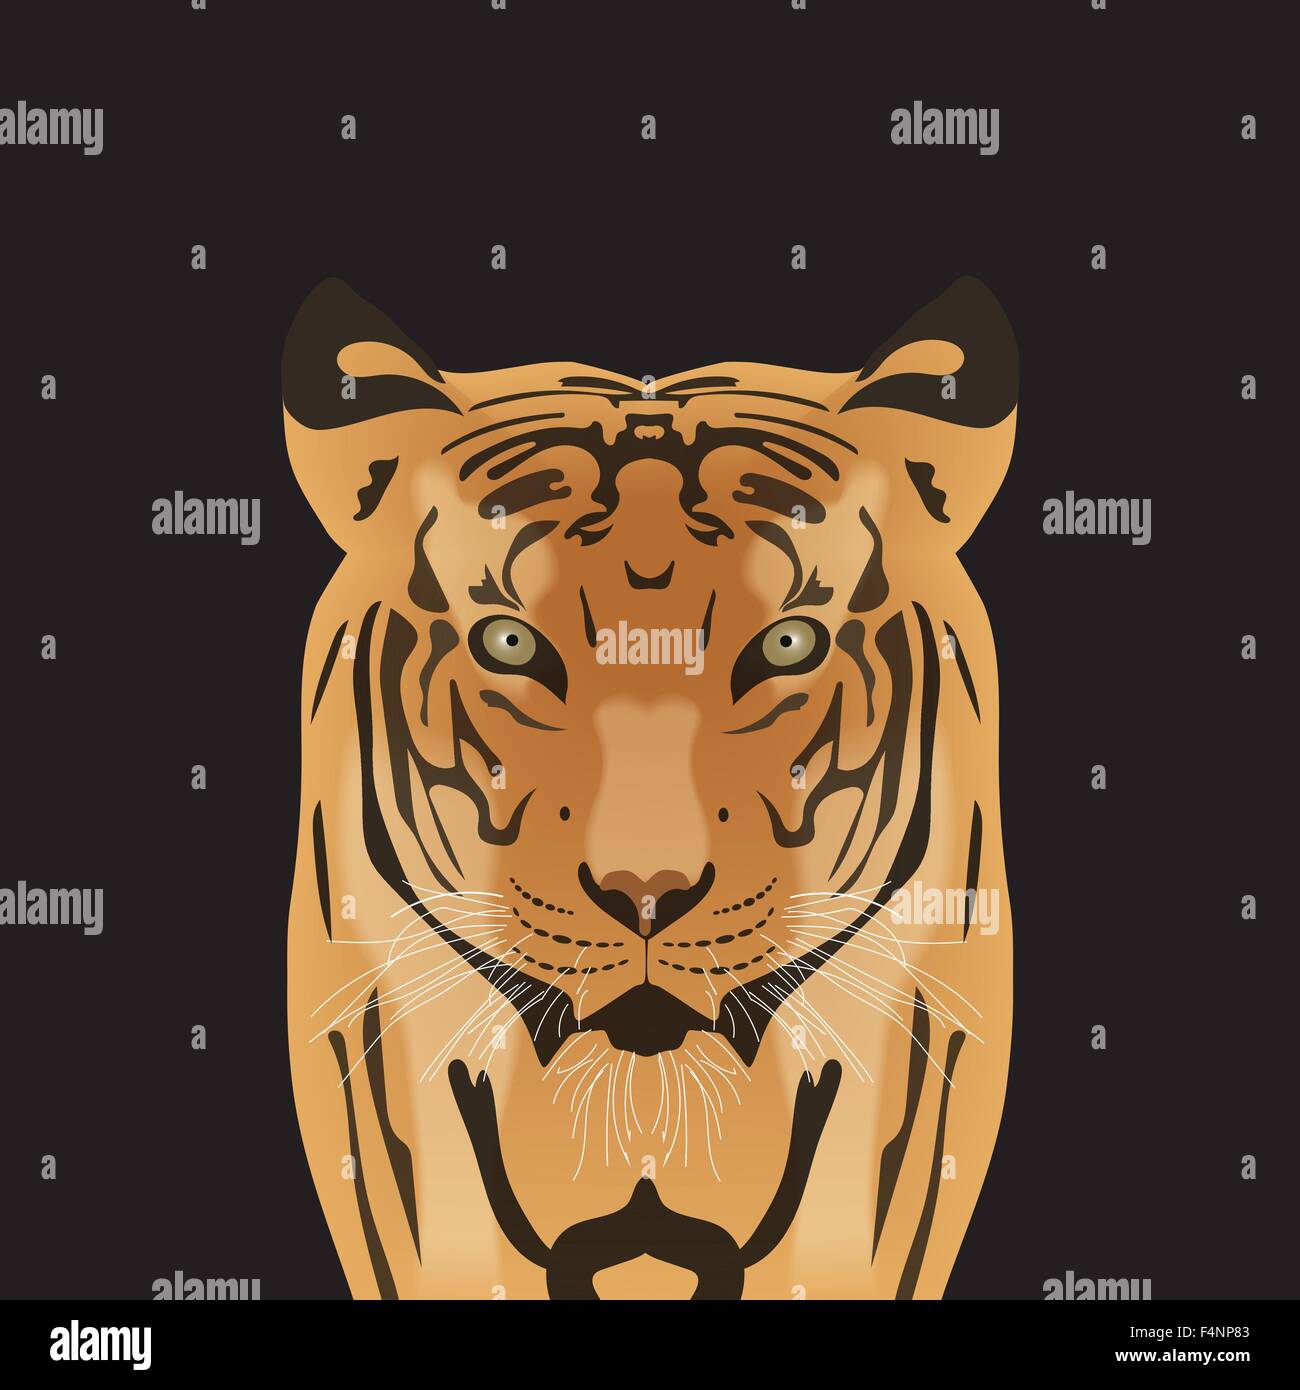 Flache Vektor Porträt eines Tigers. Schönes Gesicht eine große Katze mit durchdringenden Augen. Stock Vektor